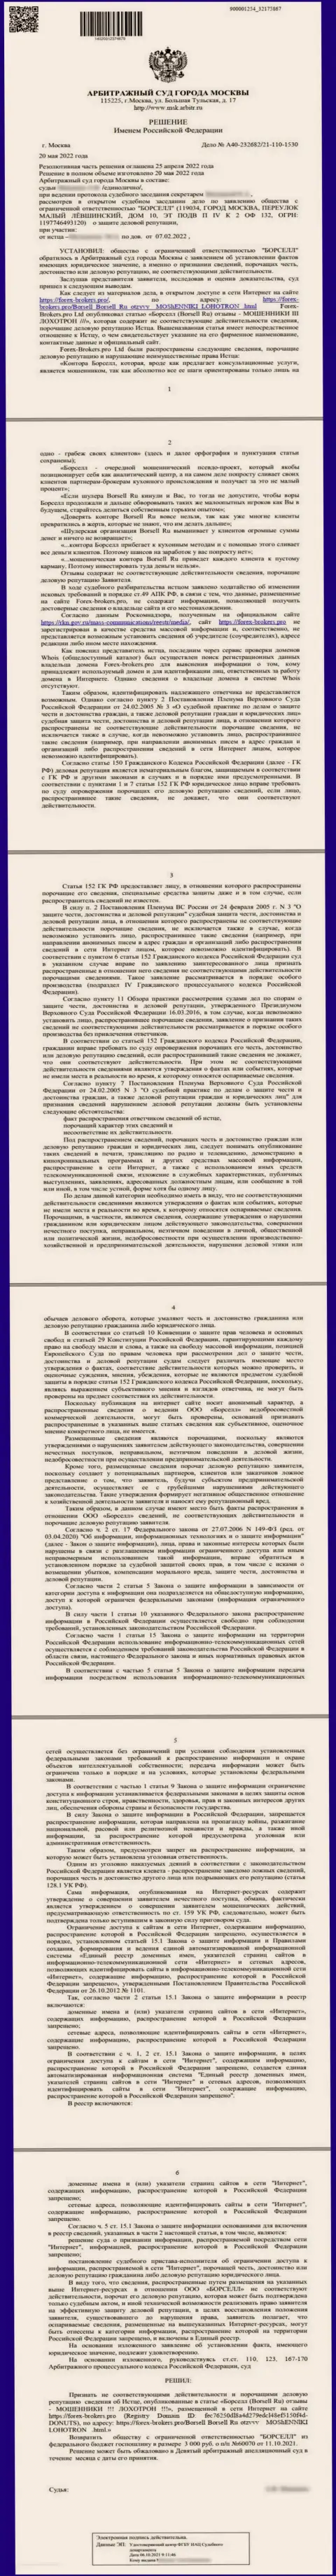 Скриншот решения арбитражного суда по исковому заявлению аналитической конторы ООО БОРСЕЛЛ